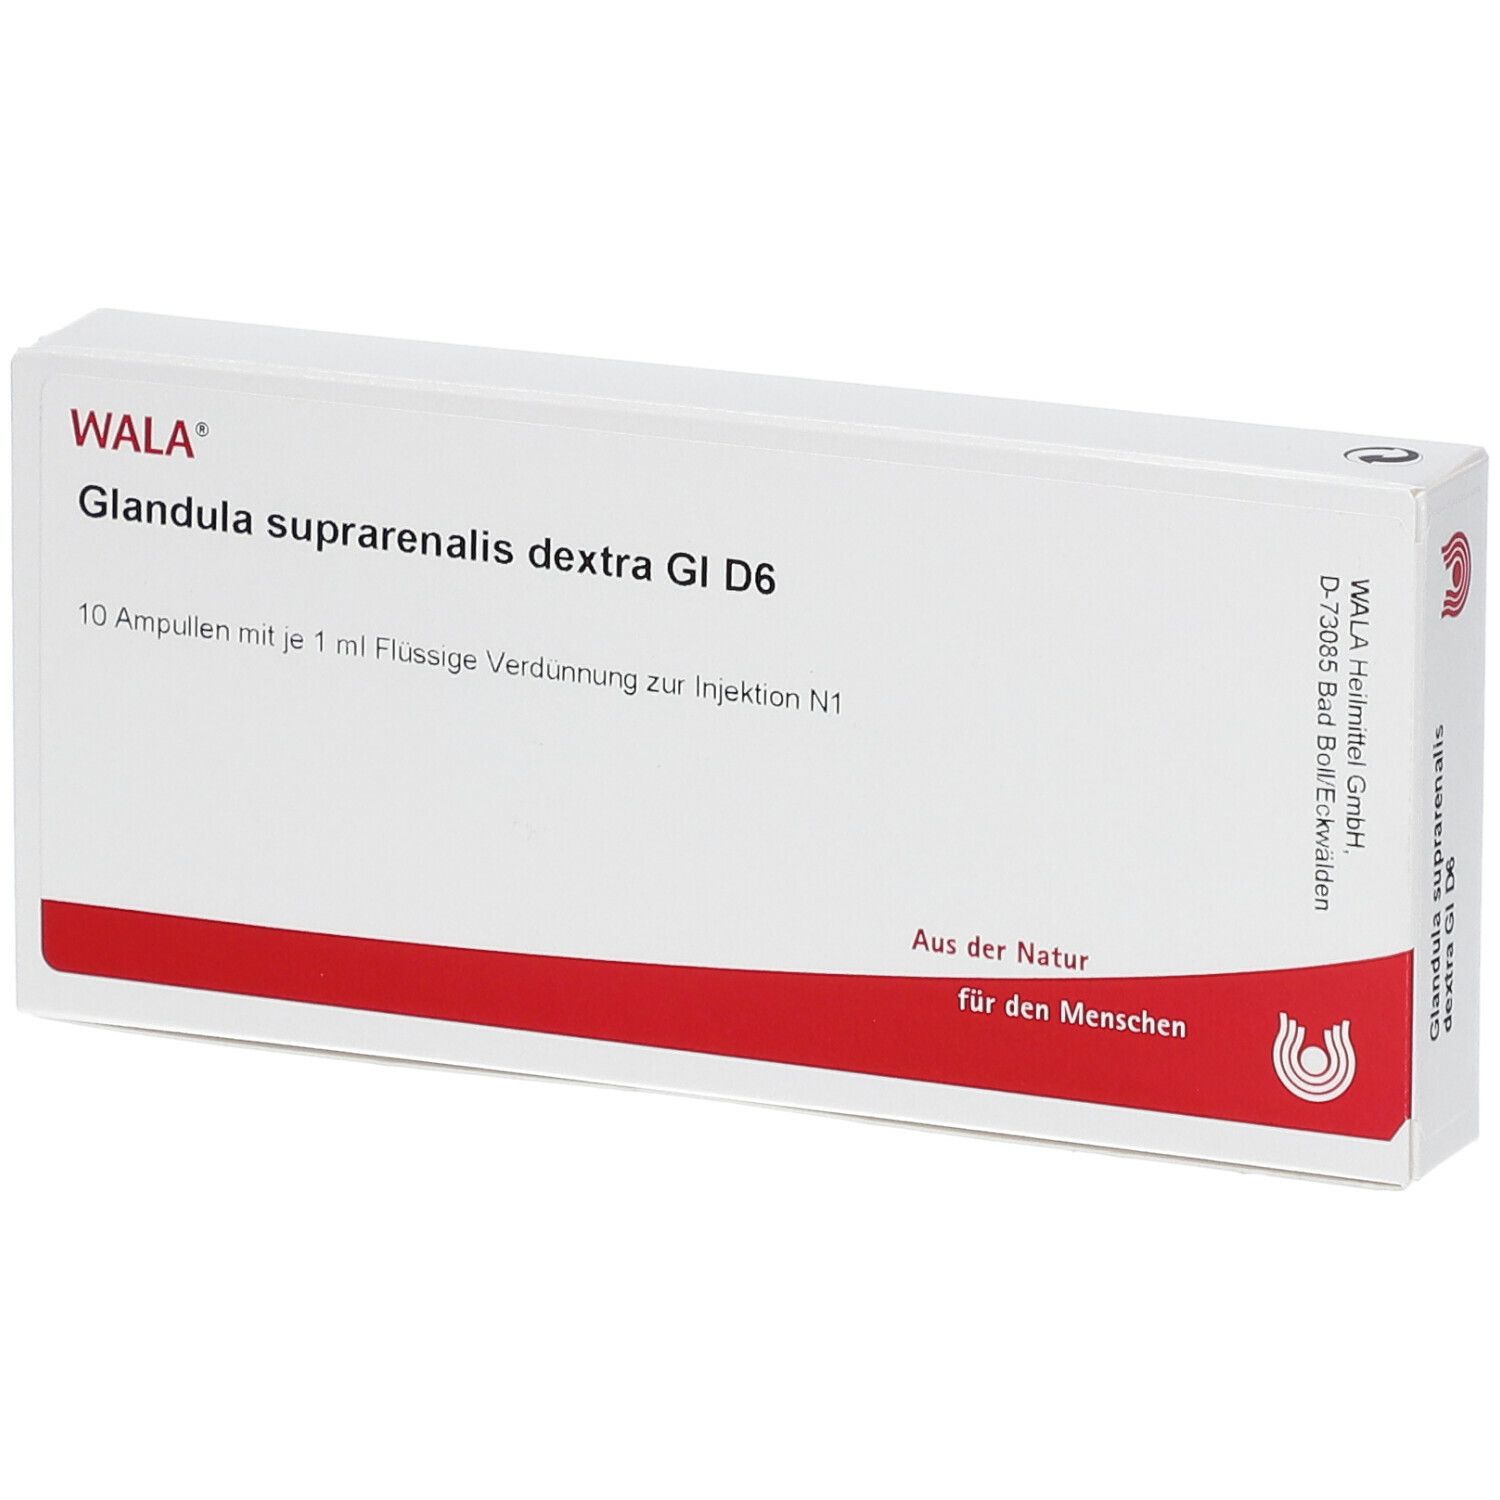 WALA® Glandula suprarenalis dextra Gl D 6